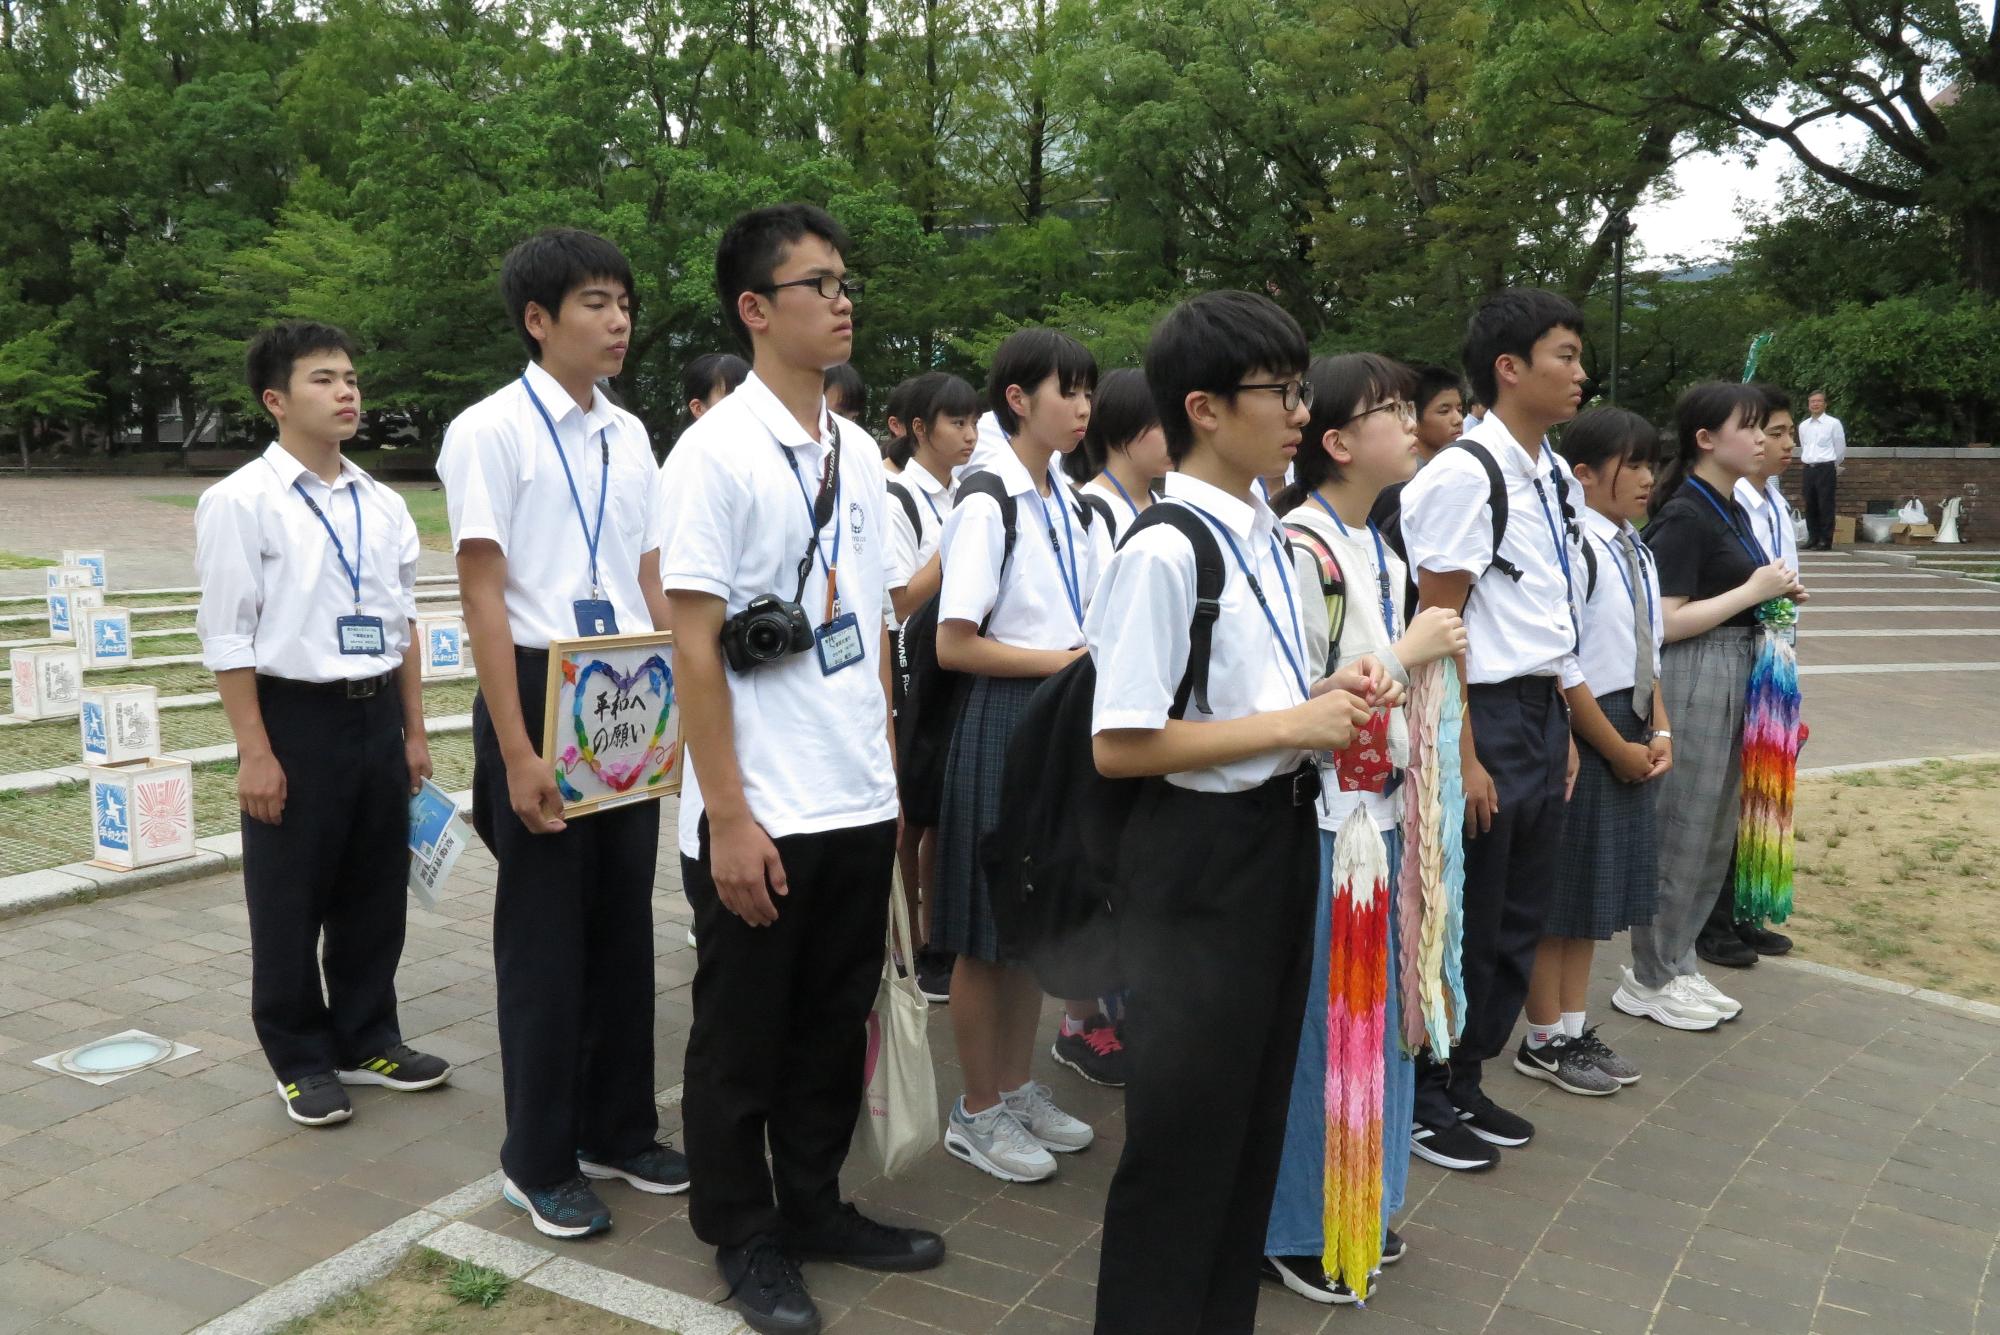 折り鶴やメッセージボードを持った生徒たちが並んで立っている写真